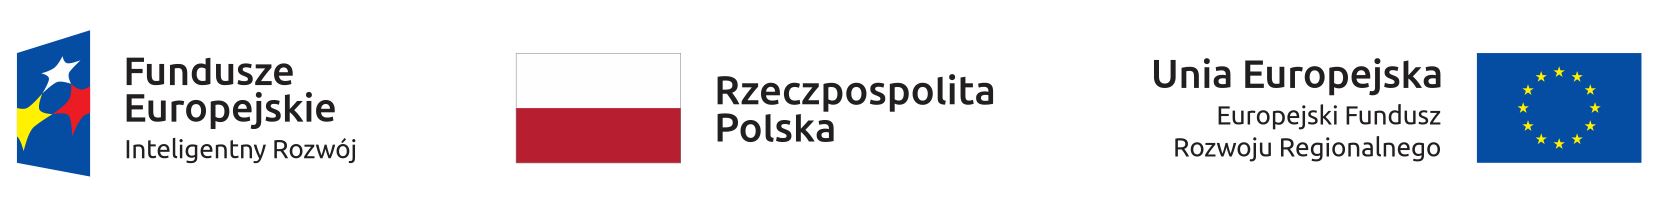 Logo Fundusze Europejskie Inteligentny Rozwój, Flaga Rzeczpospolitej Polskiej, Flaga Unii Europejskiej